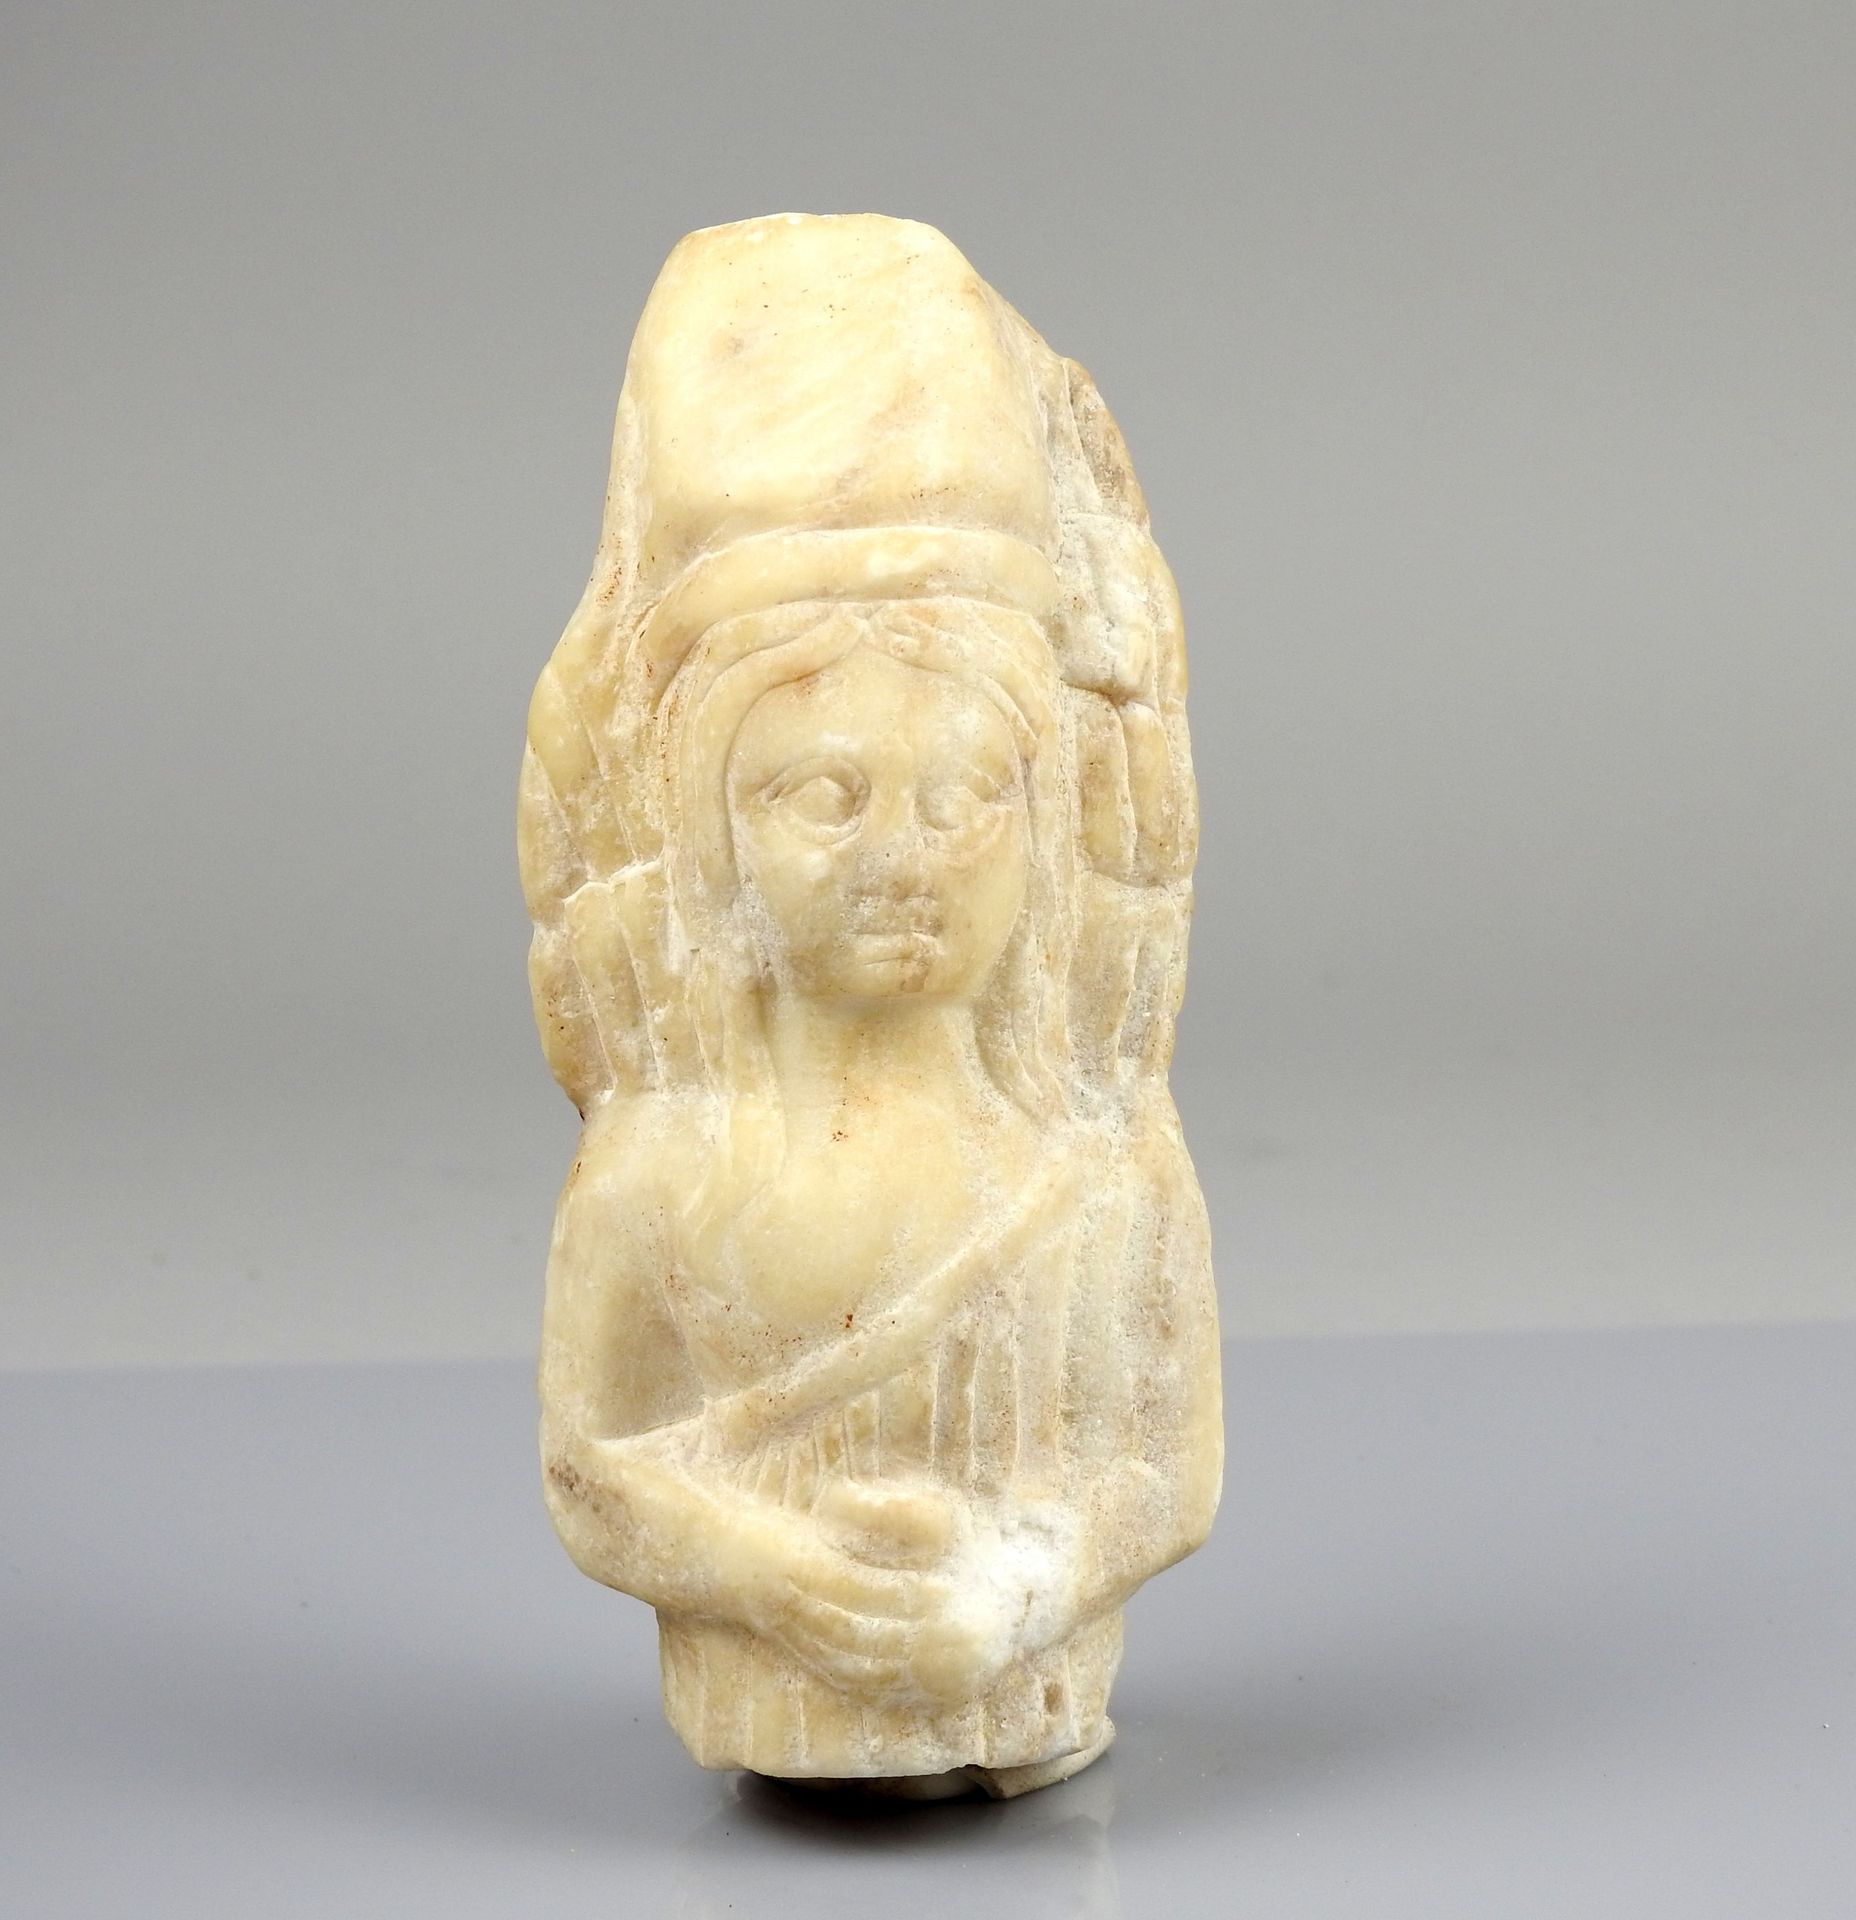 Null 大型雕像，双手放在腹部，戴着长长的头饰

大理石或雪花石12厘米

古代时期